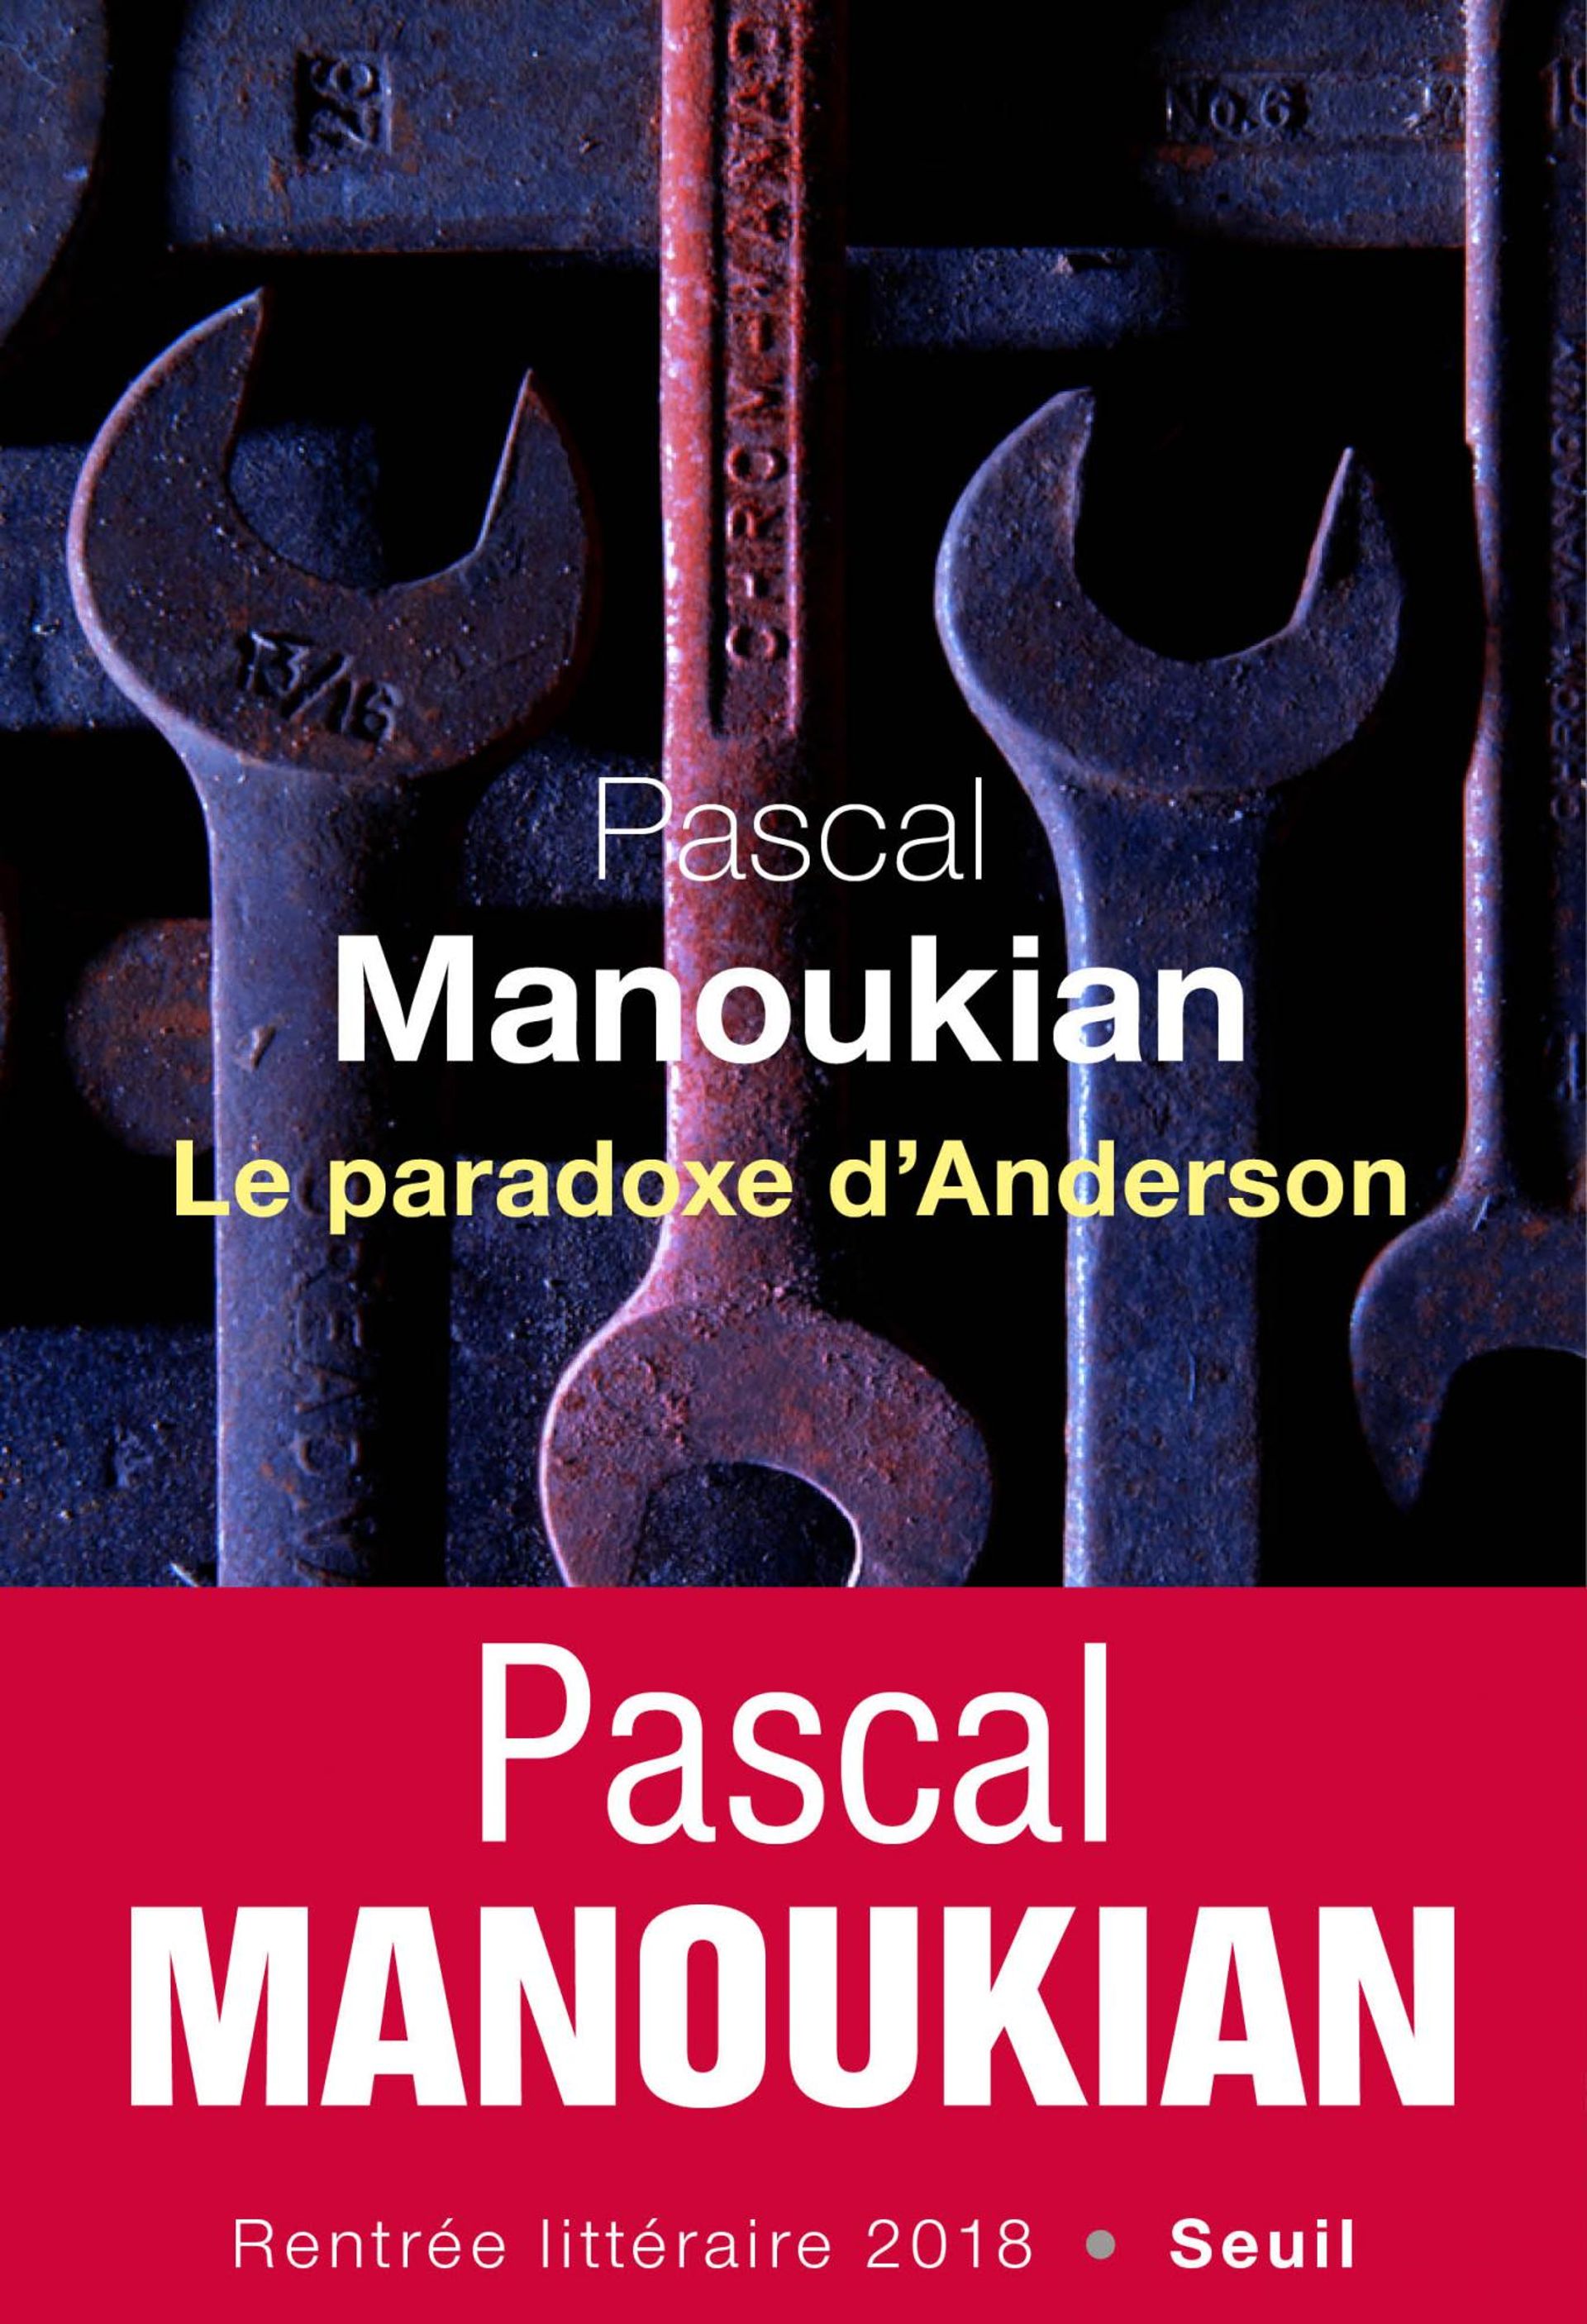 Pascal Manoukian, "Le paradoxe d'Anderson"